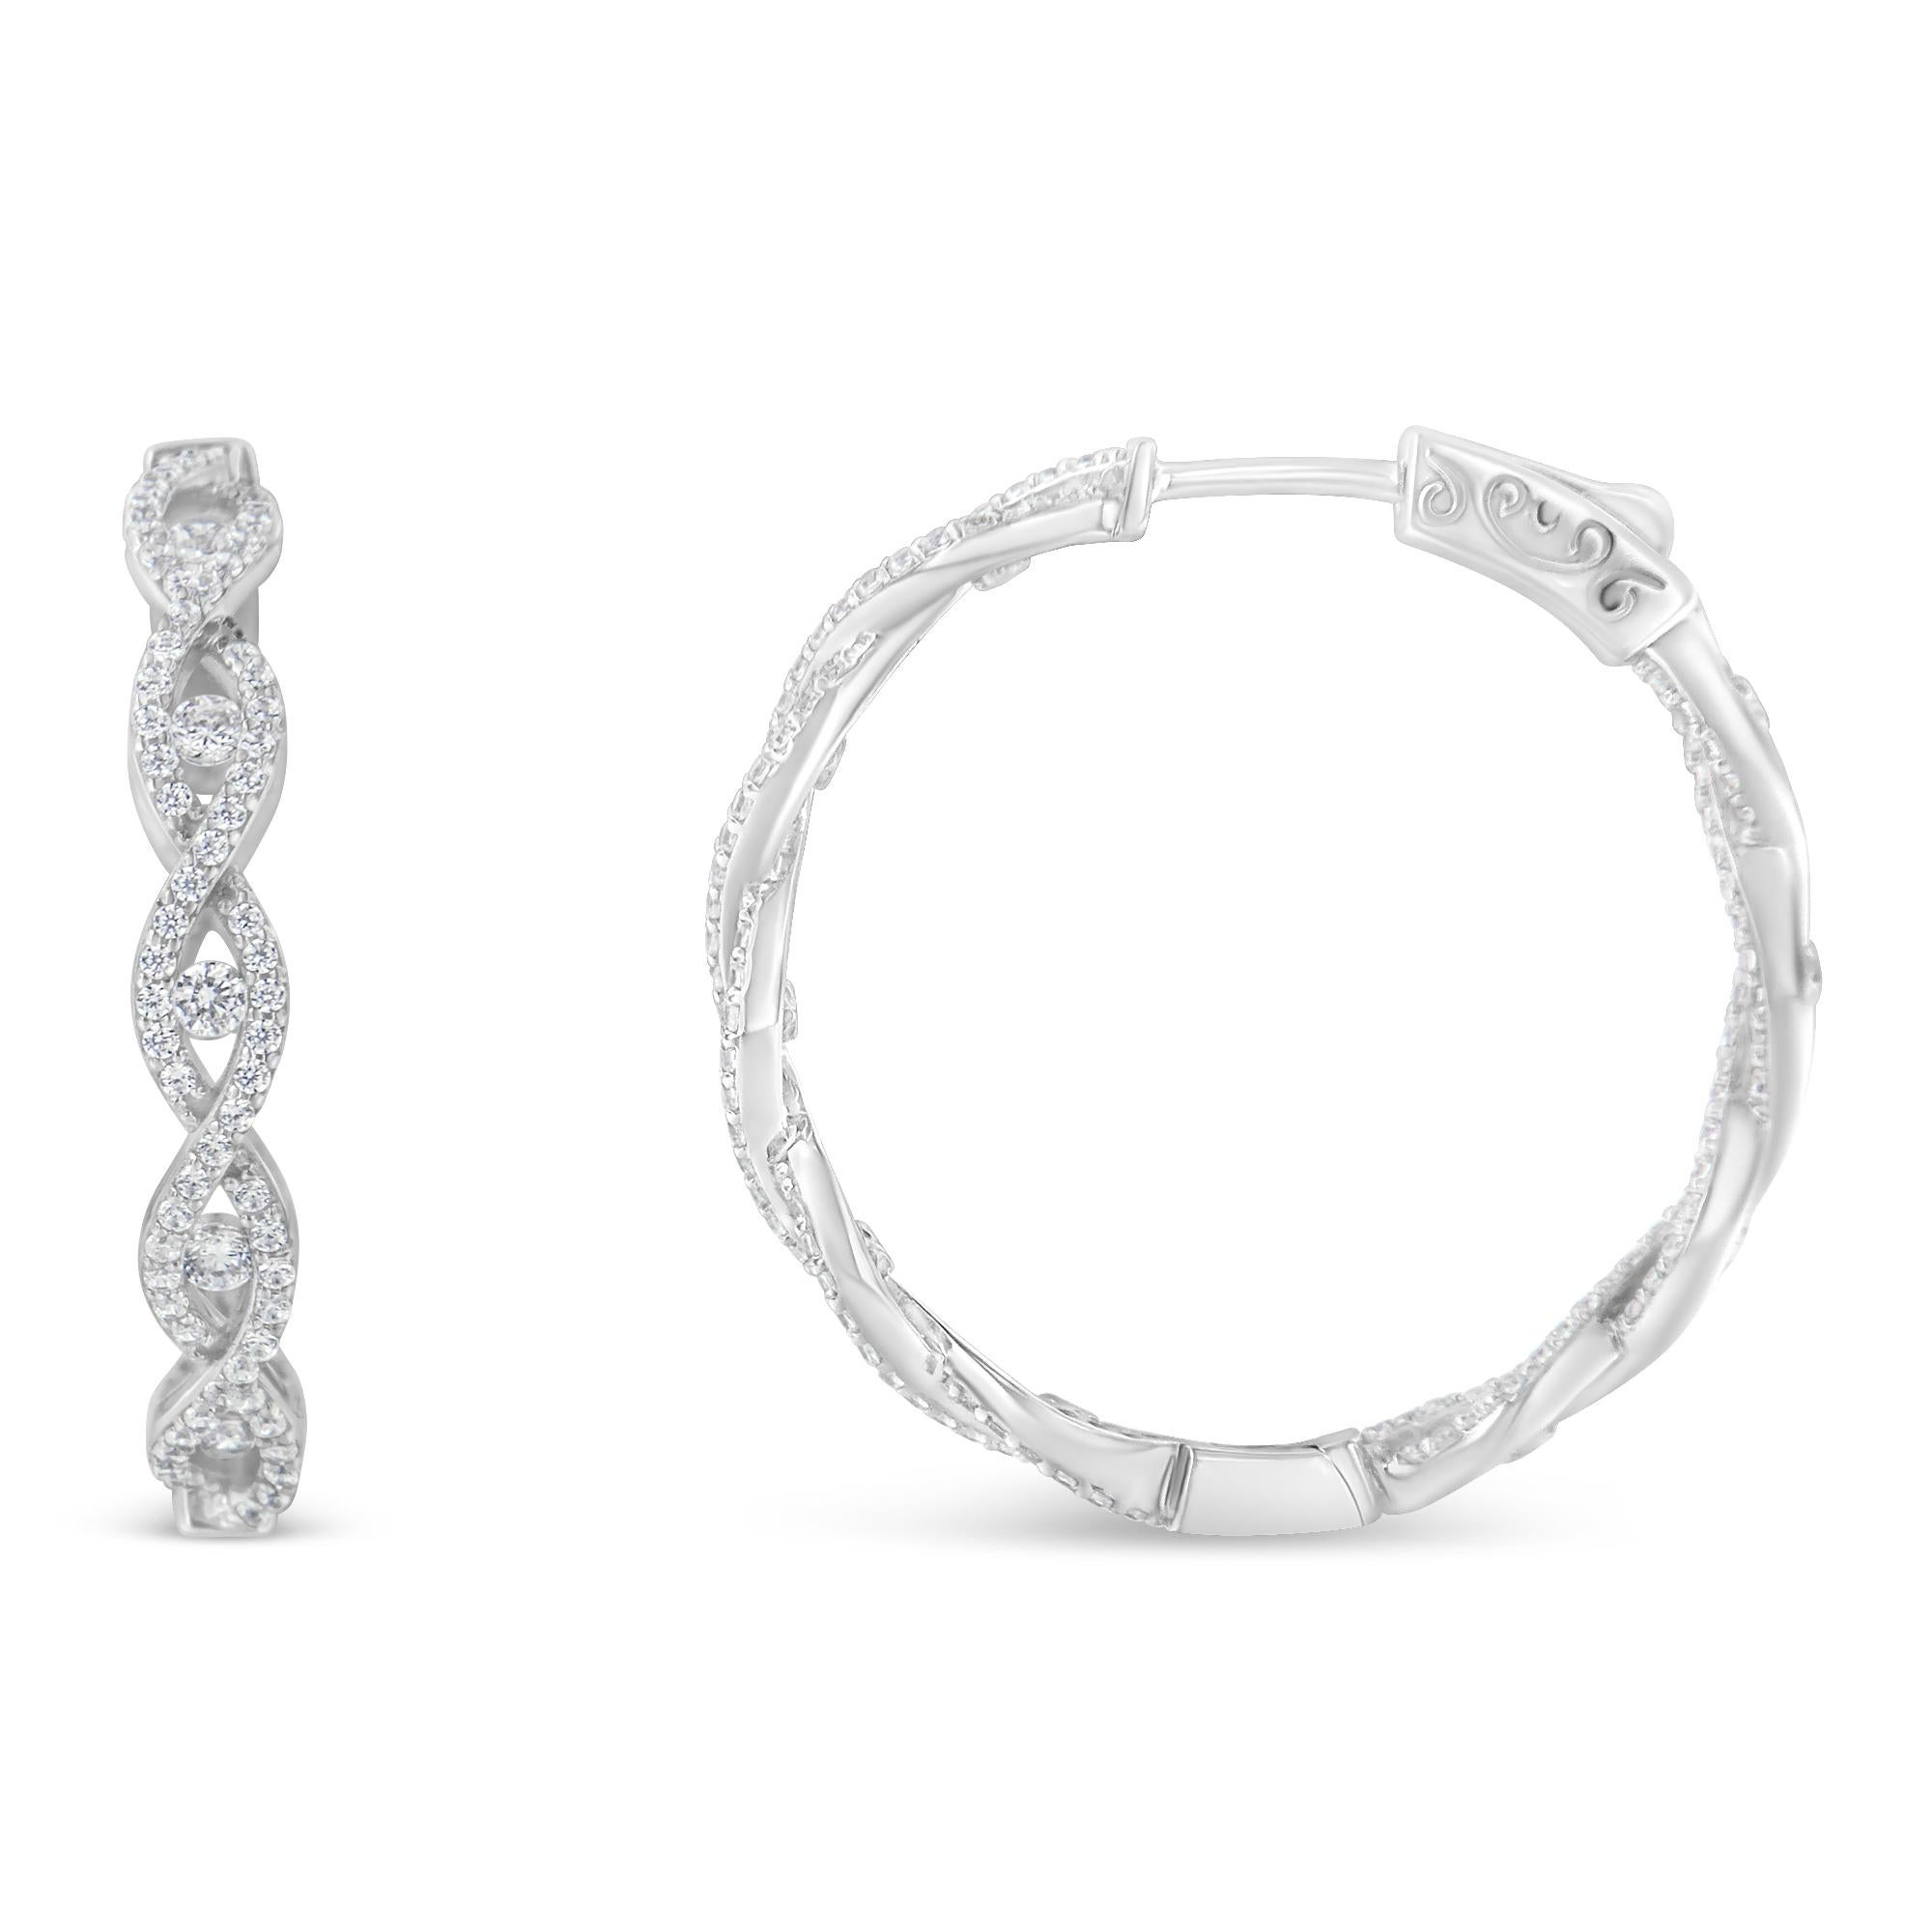 Une paire d'élégantes boucles d'oreilles en forme de gouttes de diamants présente un motif infini allongé serti de diamants. Chaque forme d'infini comporte un diamant rond central pour un éclat supplémentaire. Réalisées en or blanc 10 carats, elles